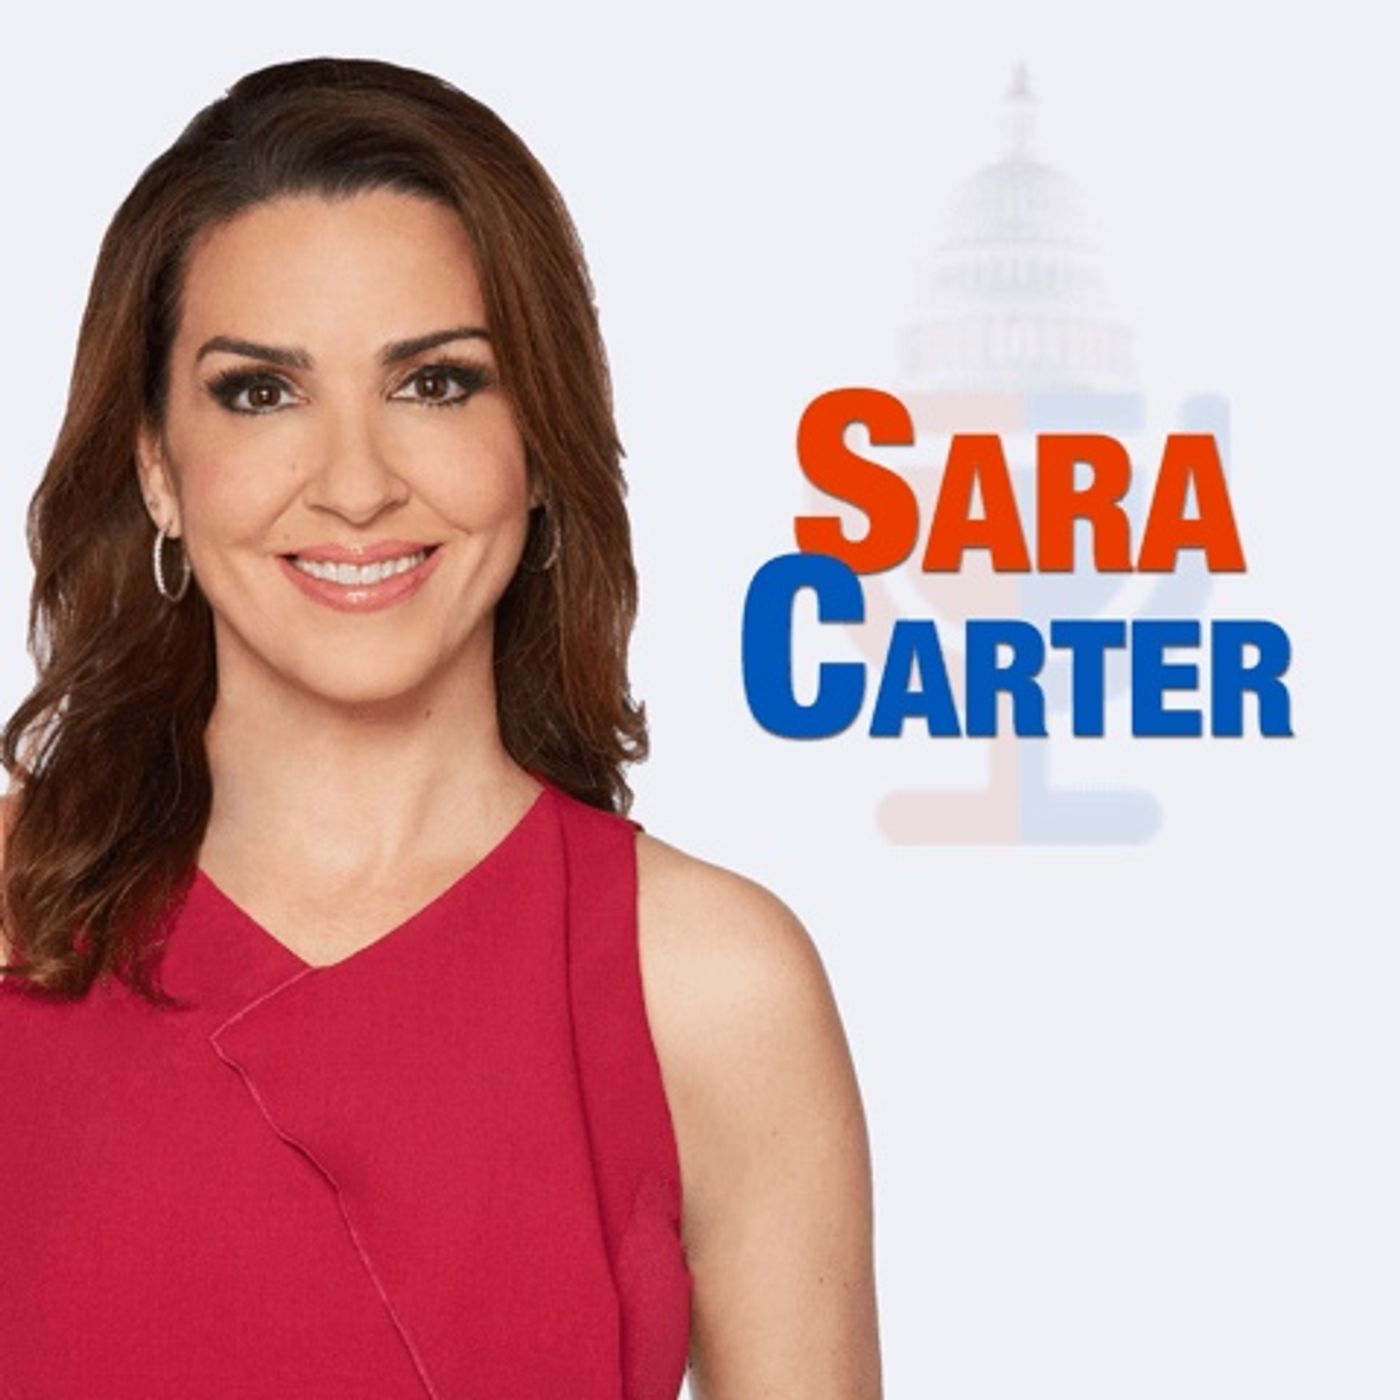 Check Out Sara Carter!!